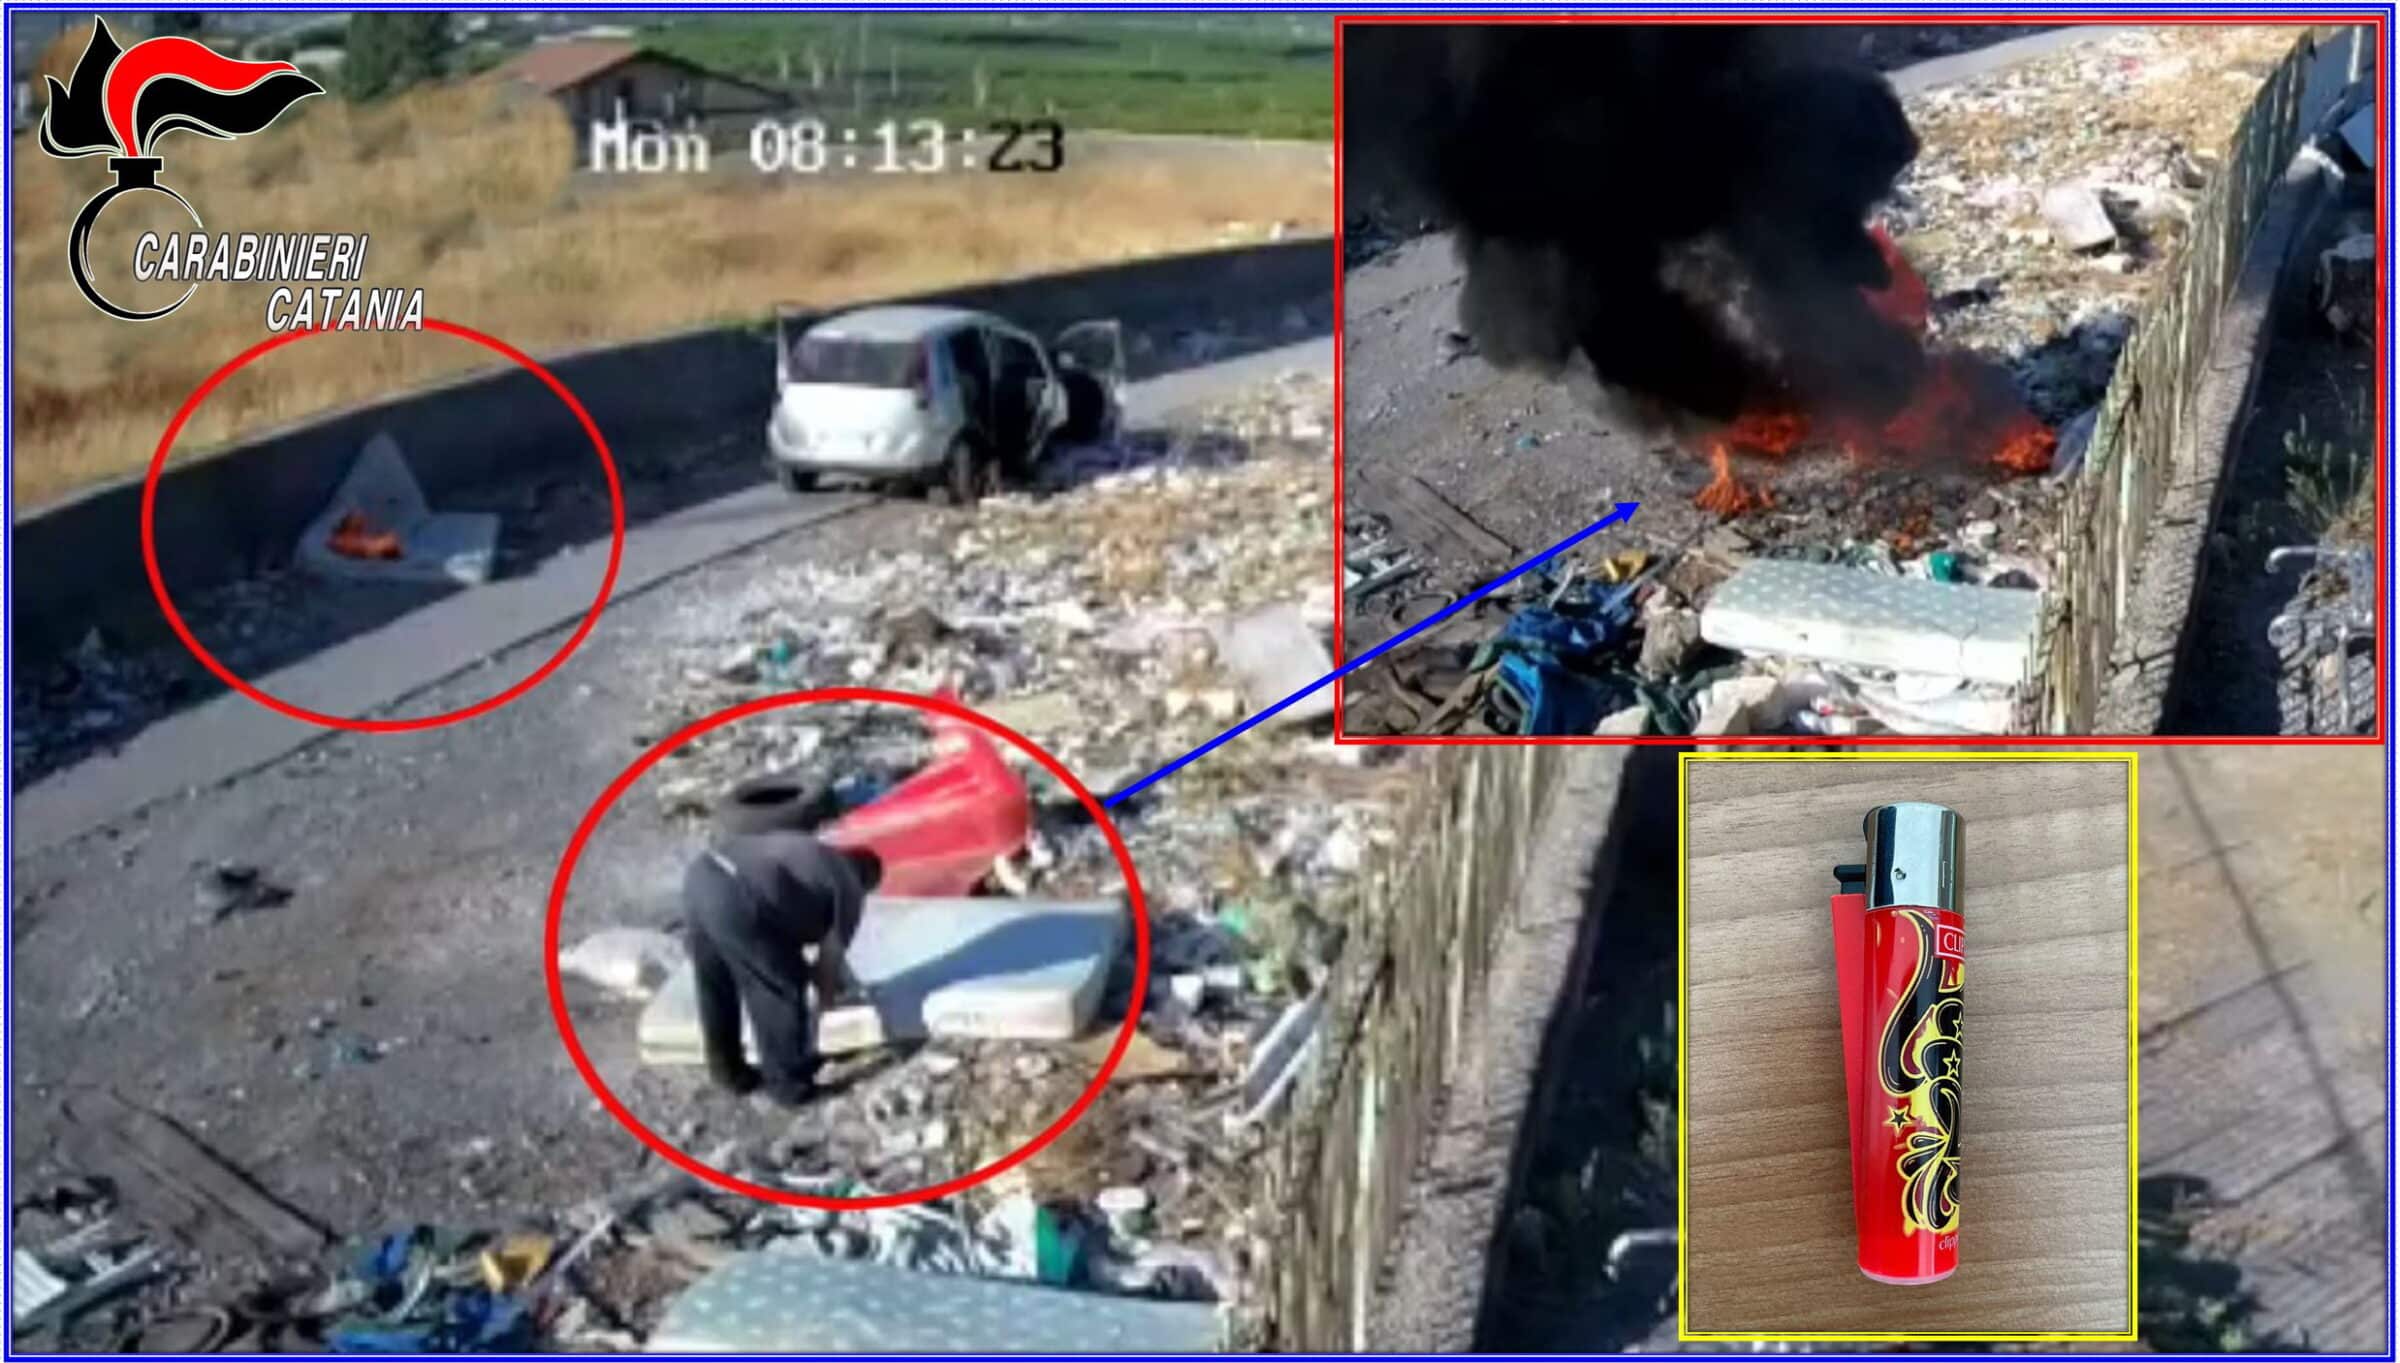 Sfiorata tragedia a Paternò, arrestato piromane: brucia rifiuti vicino ad abitazioni – IL VIDEO